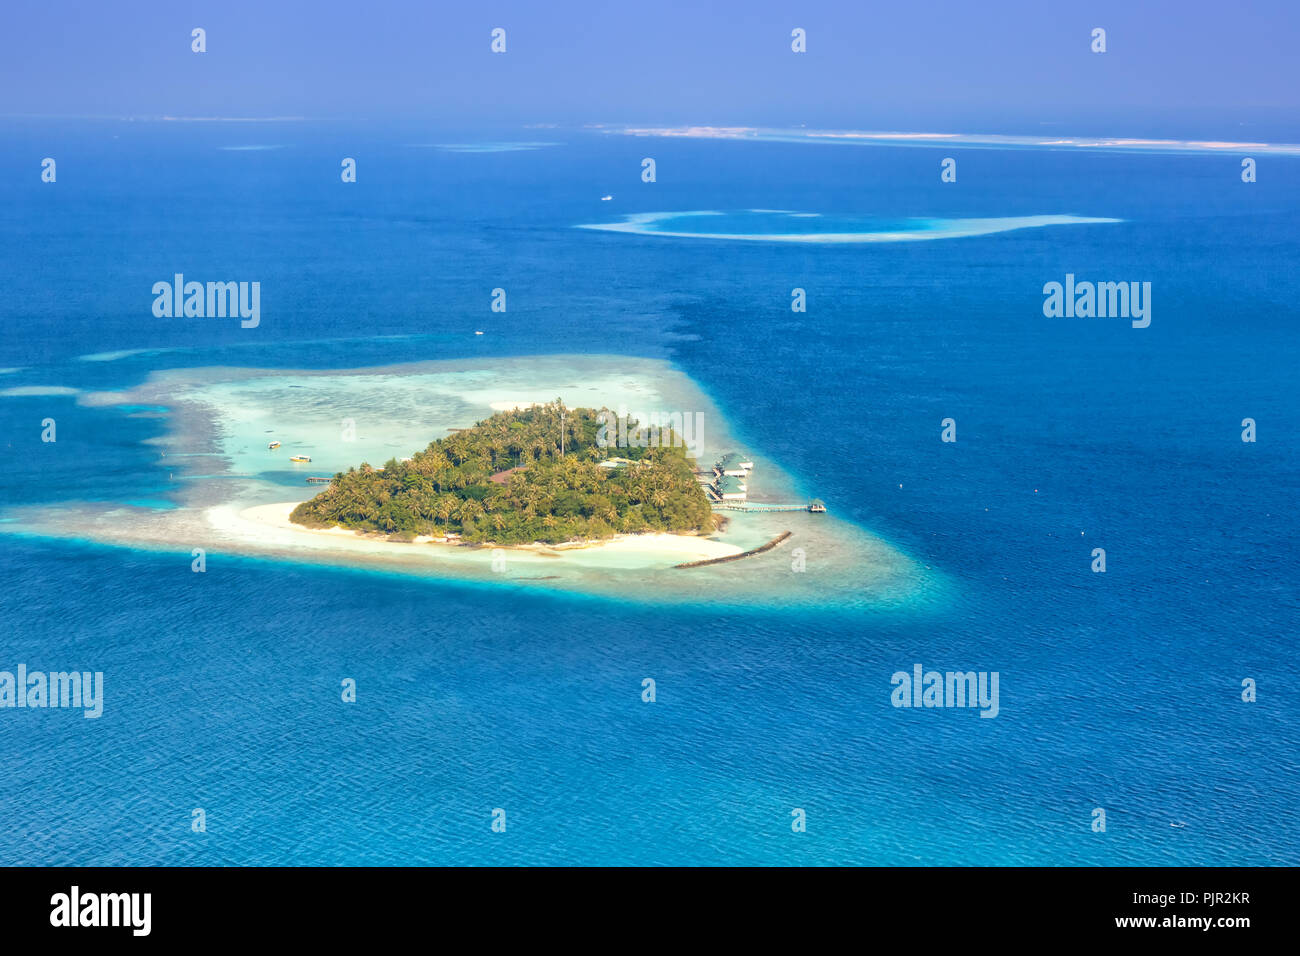 Island Maldives vacation paradise sea Embudu Resort aerial photo tourism Stock Photo